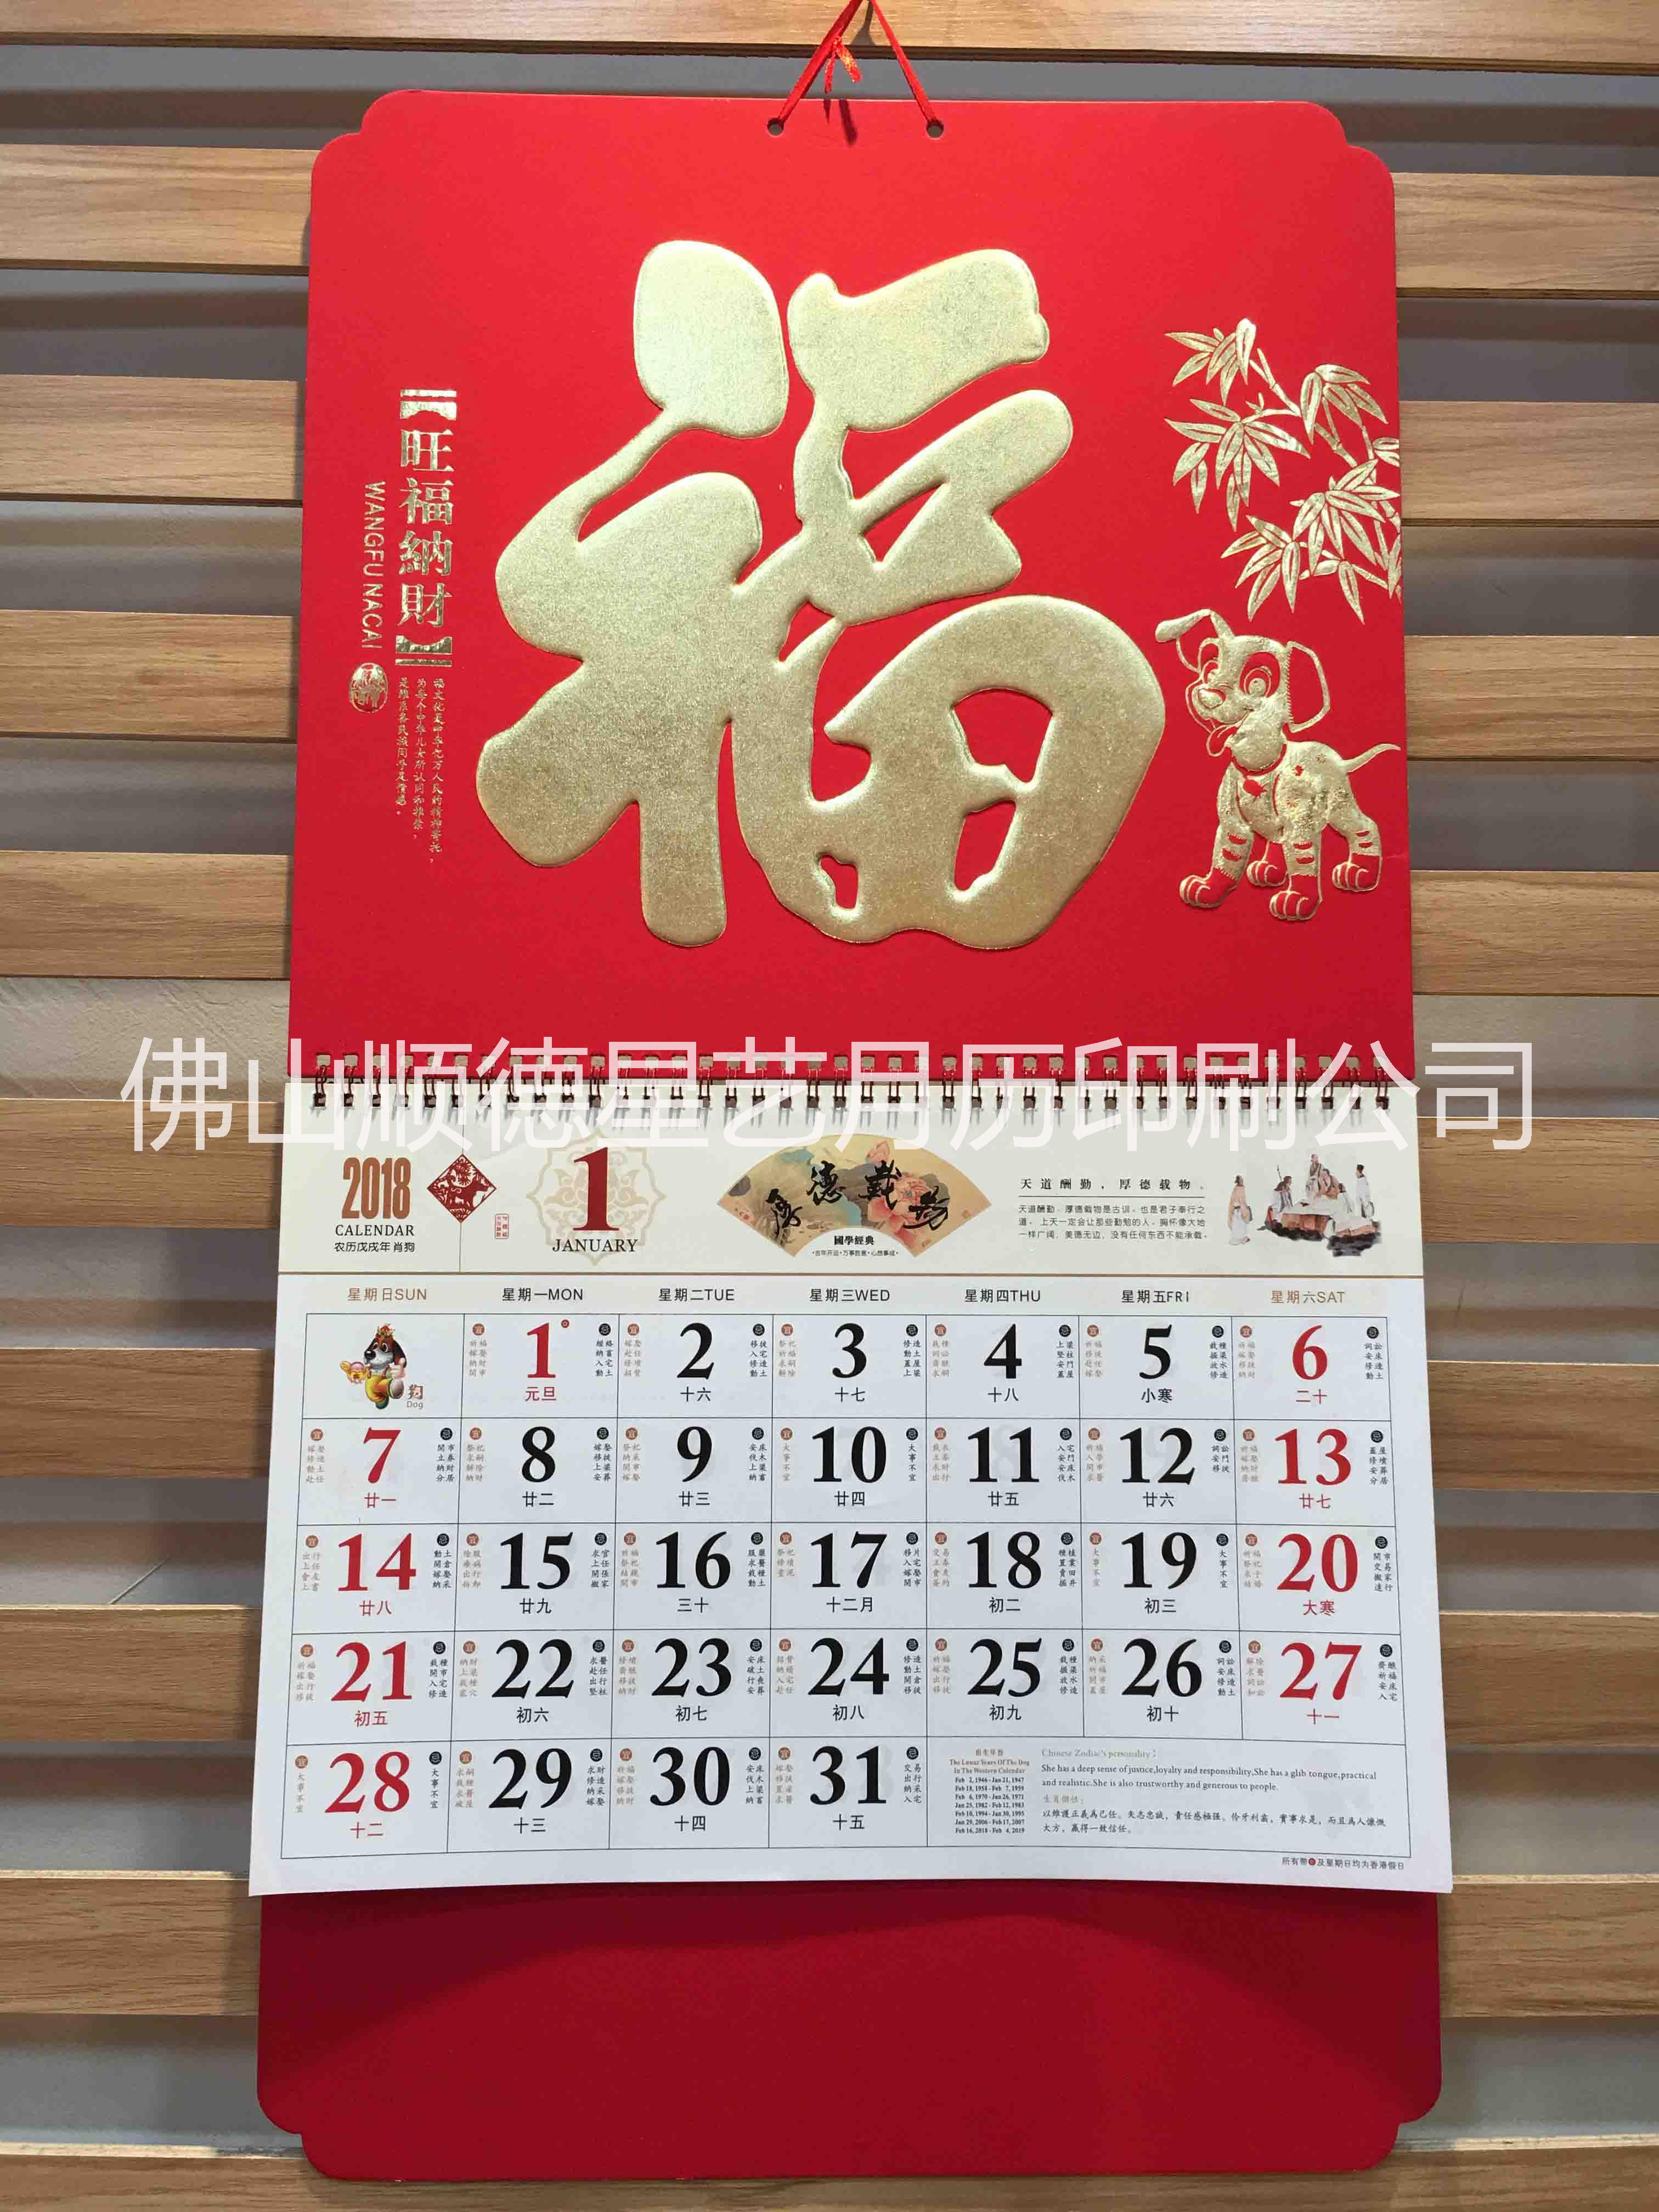 印刷广告台历挂历 正六开福字吊牌 特种纸吊牌月历